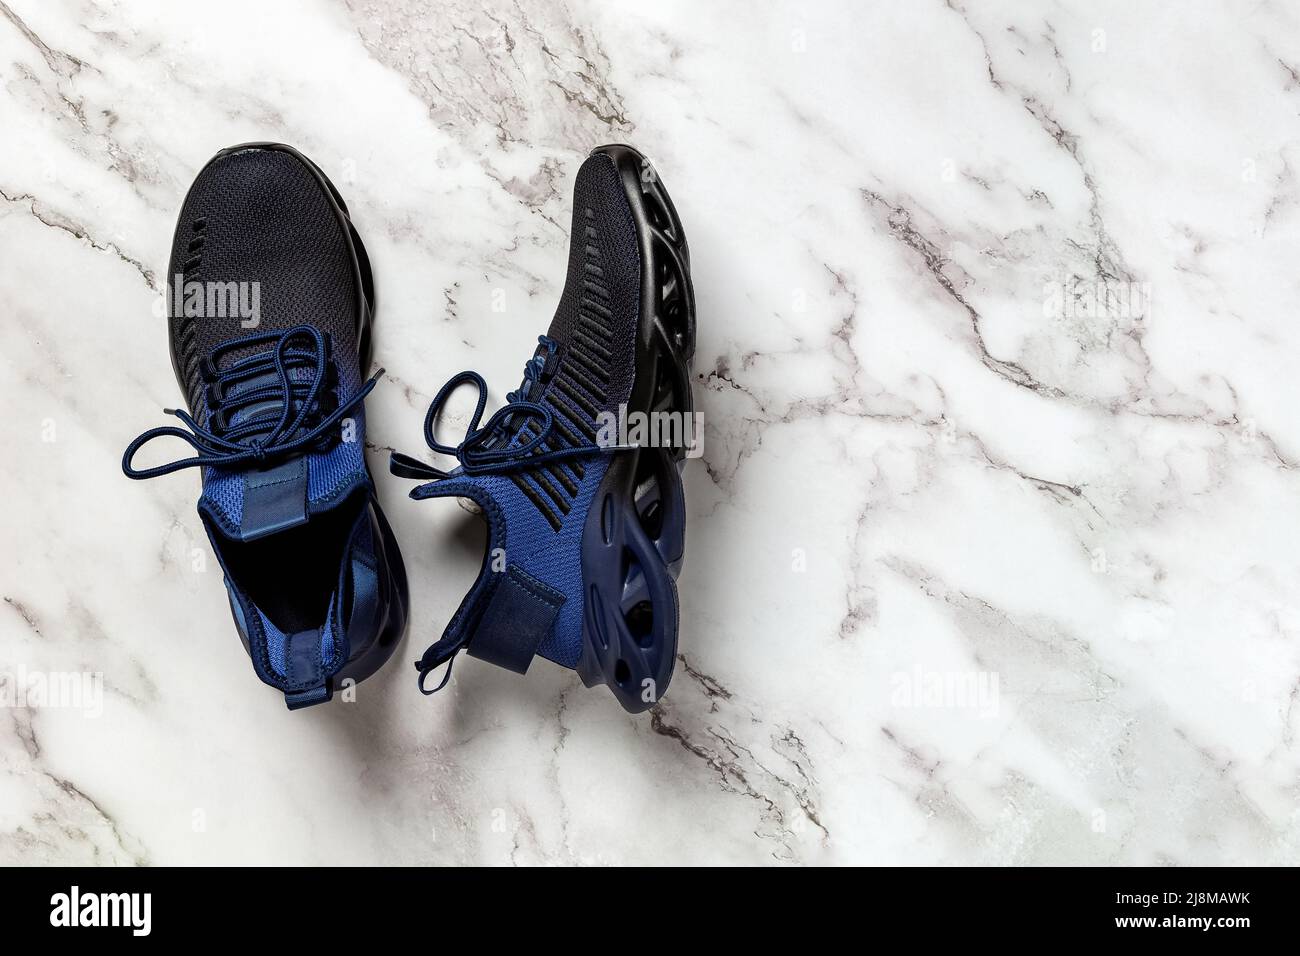 Scarpe da uomo con lacci e scanalature su un pavimento in marmo. Un paio di  sneaker in tessuto mesh blu nero per il fitness e lo stile di vita attivo.  Nuove sneakers